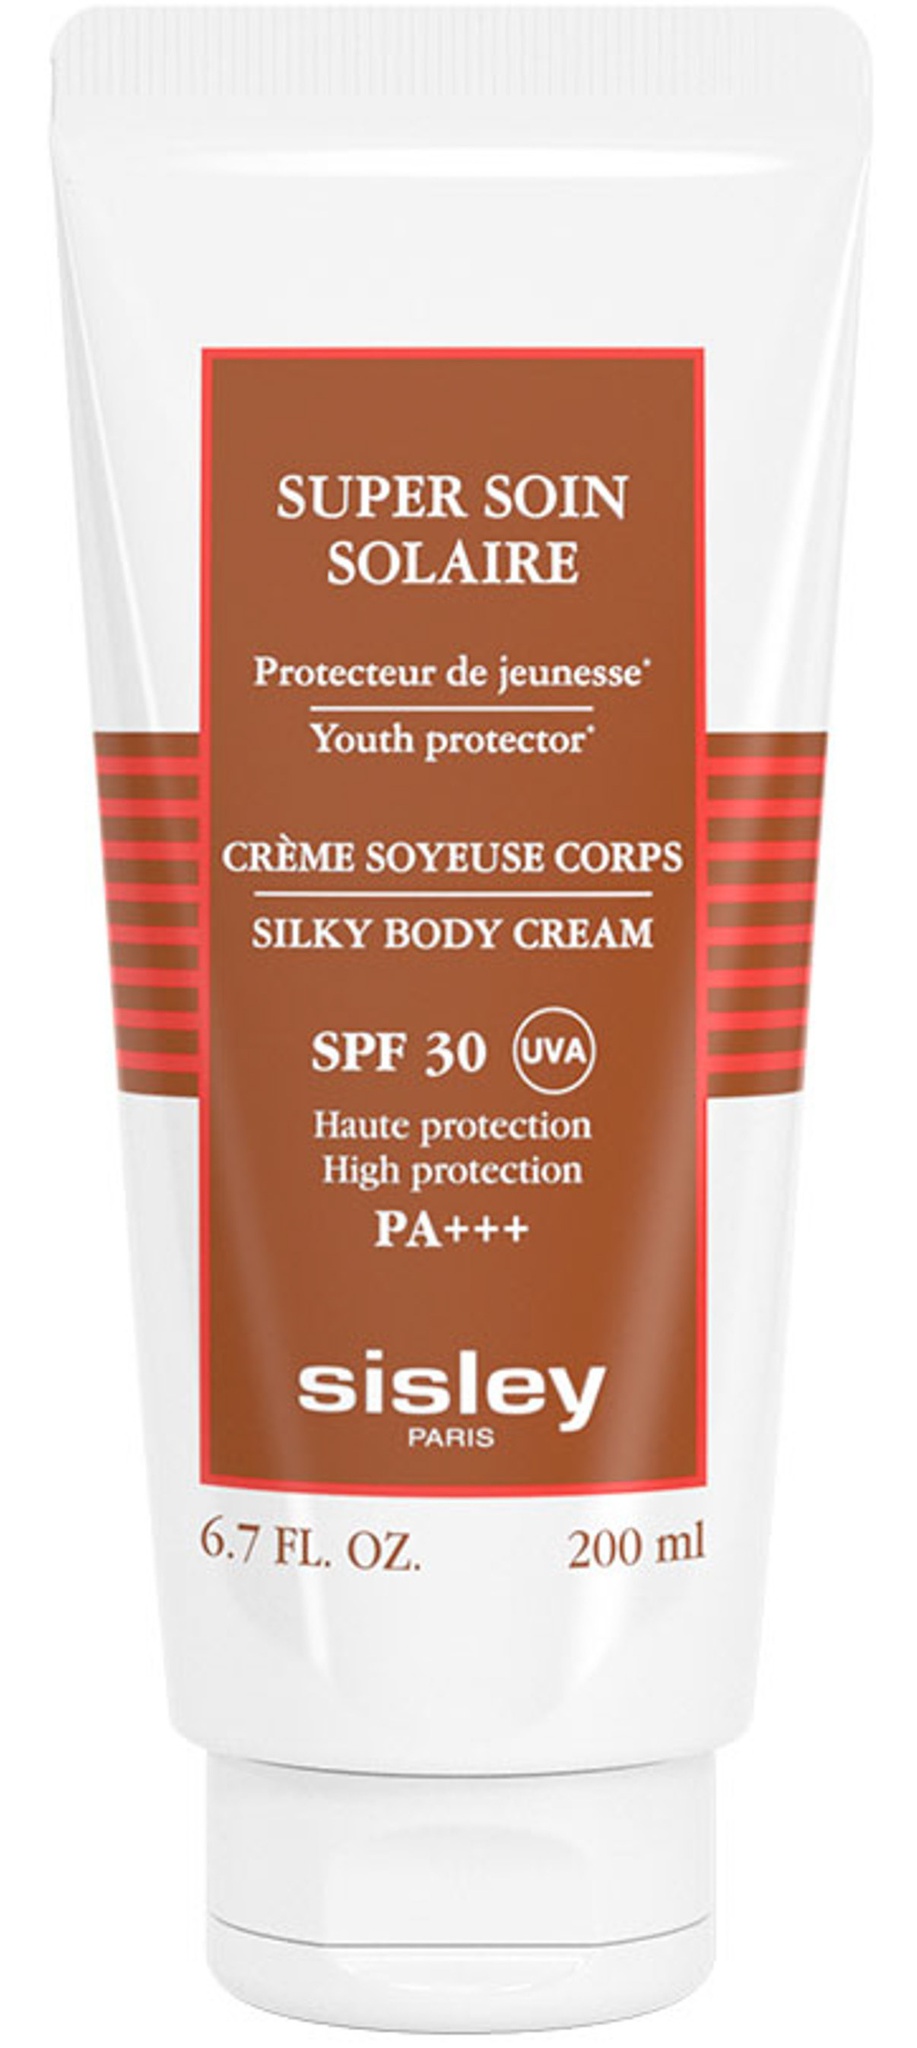 Sisley Super Soin Solaire Silky Body Cream SPF 30 PA+++